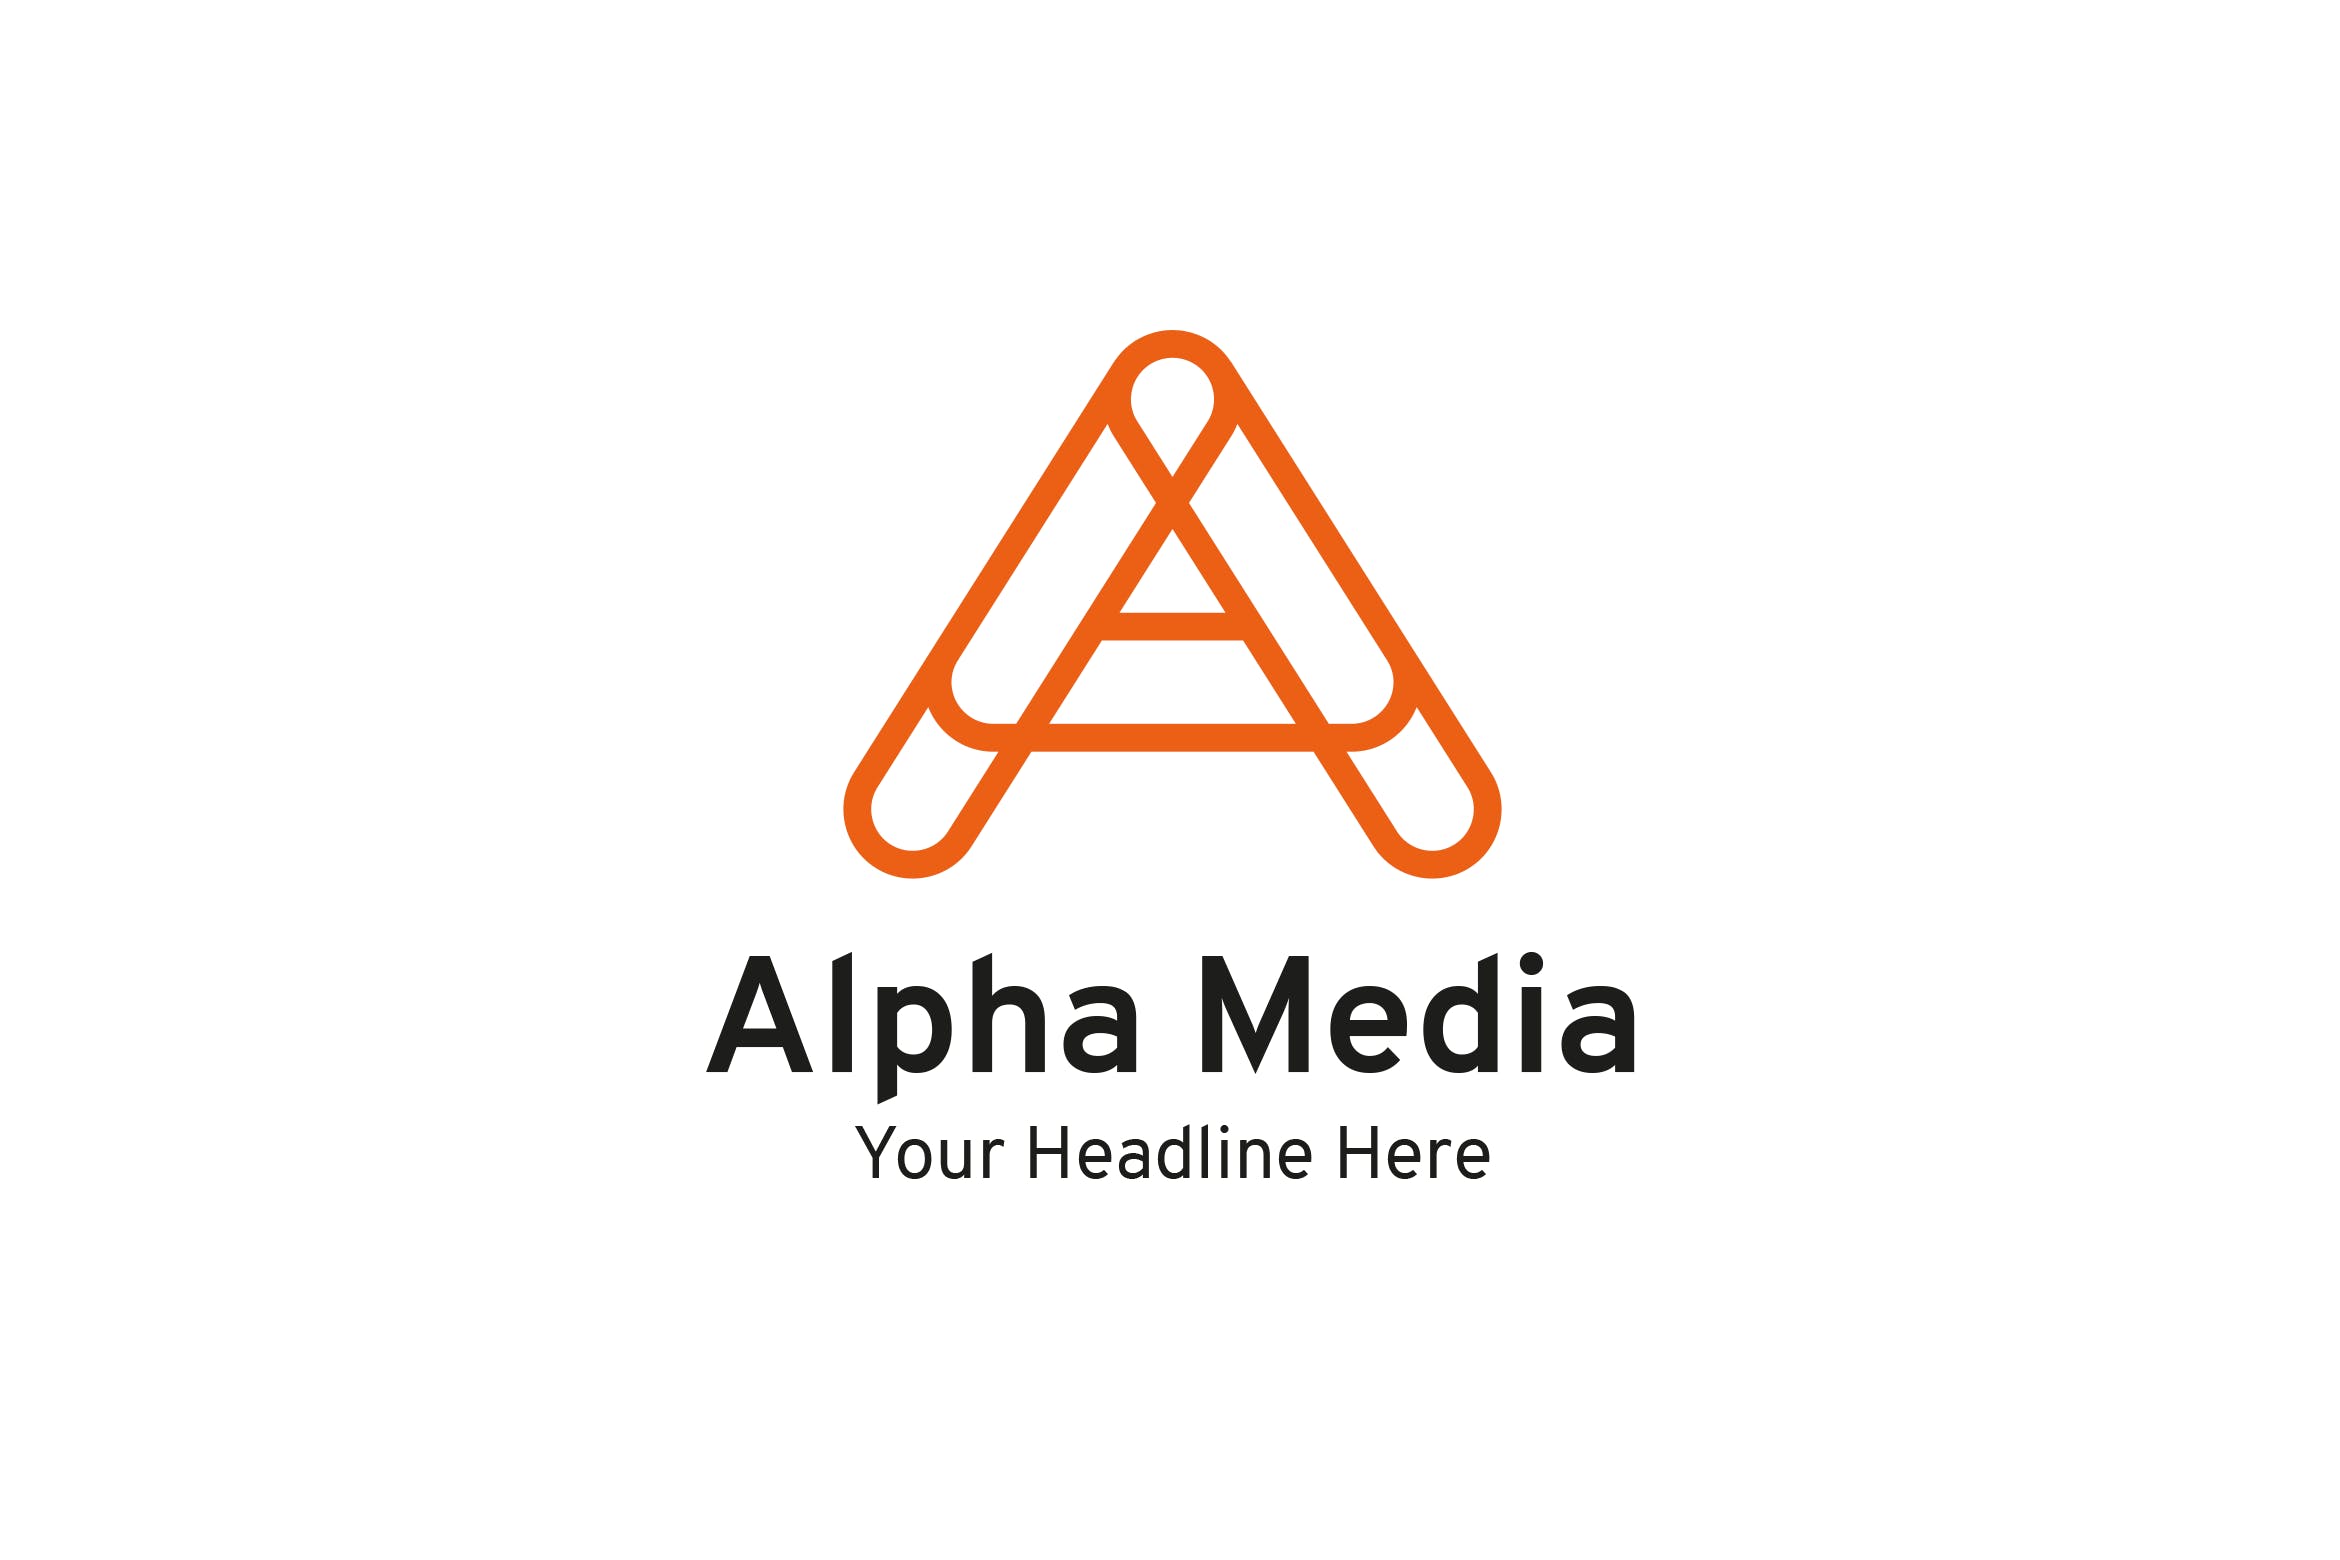 字母A创意Logo设计素材库精选模板 Alpha Media – A letter logo插图